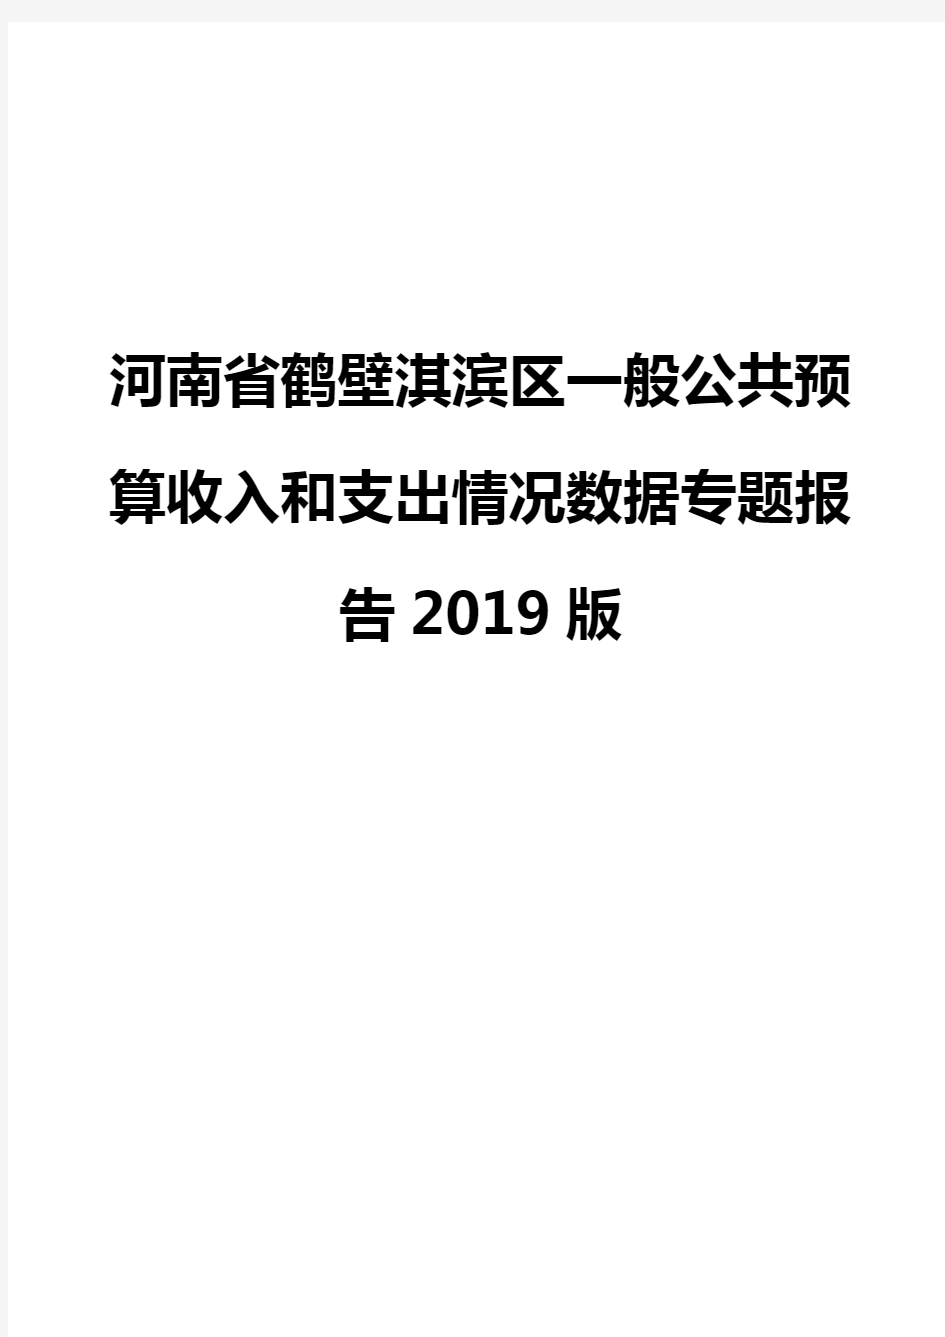 河南省鹤壁淇滨区一般公共预算收入和支出情况数据专题报告2019版